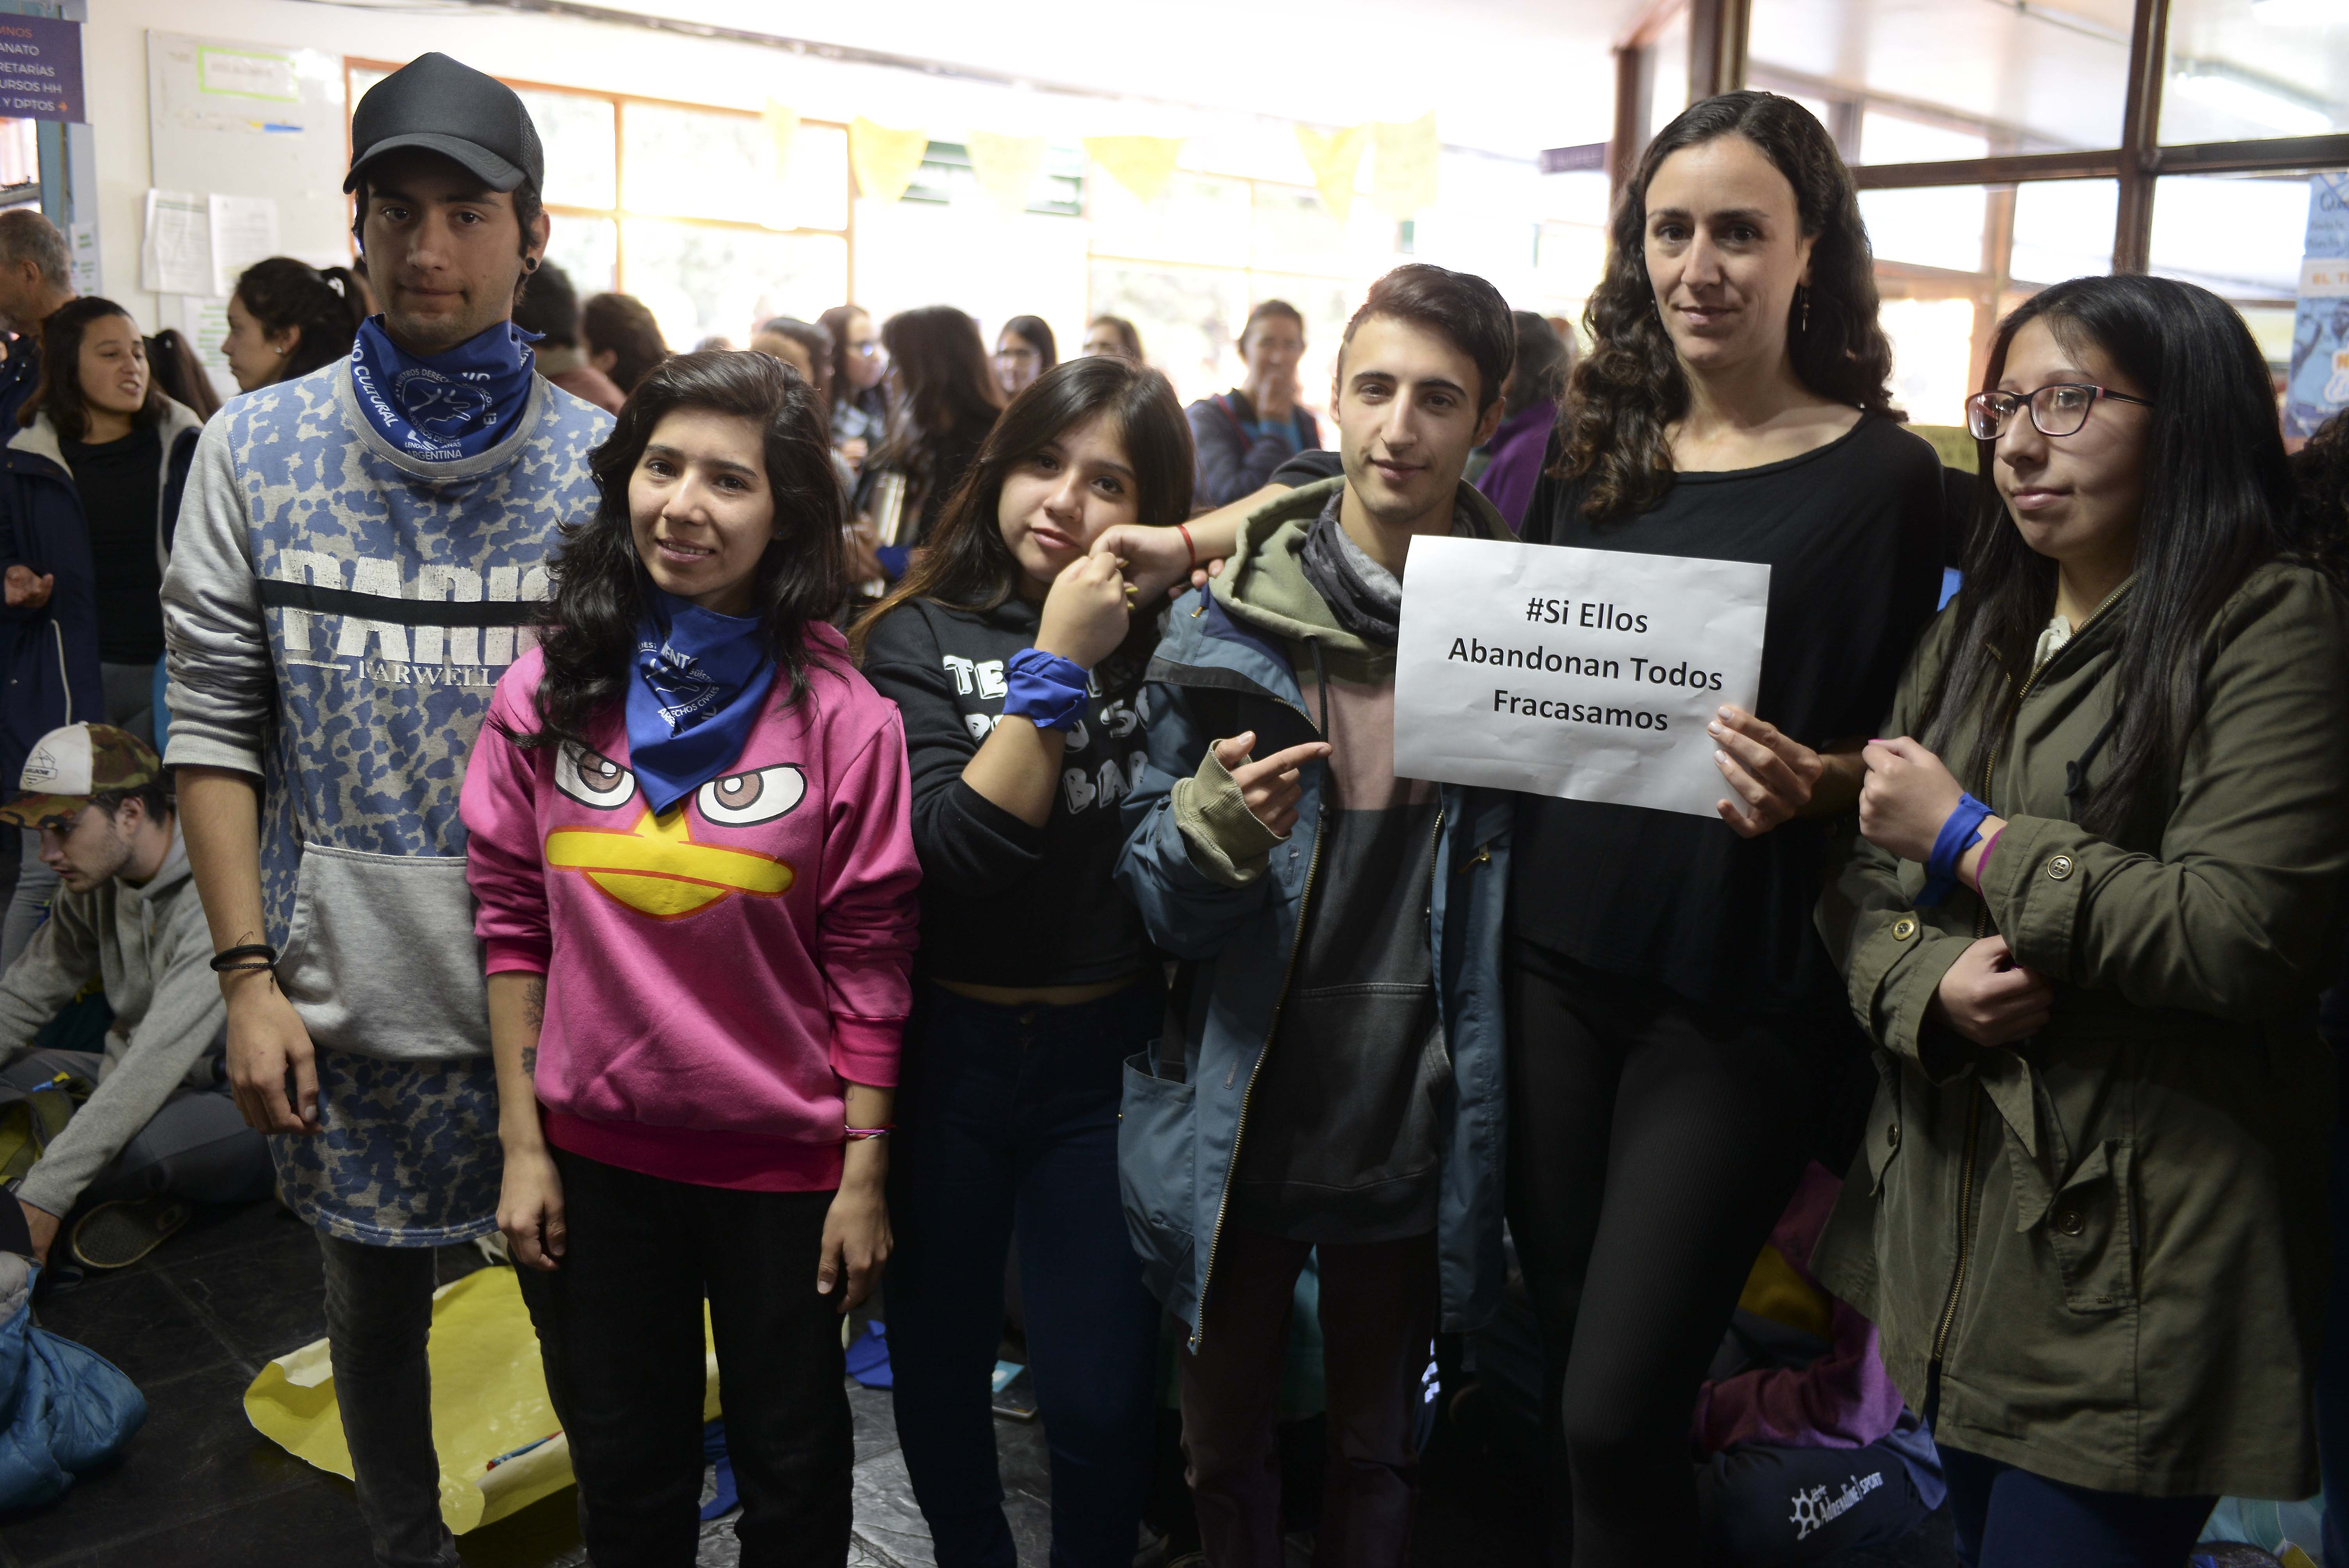 La protesta se llevó a cabo esta mañana en el hall central del Crub. Foto: Chino Leiva